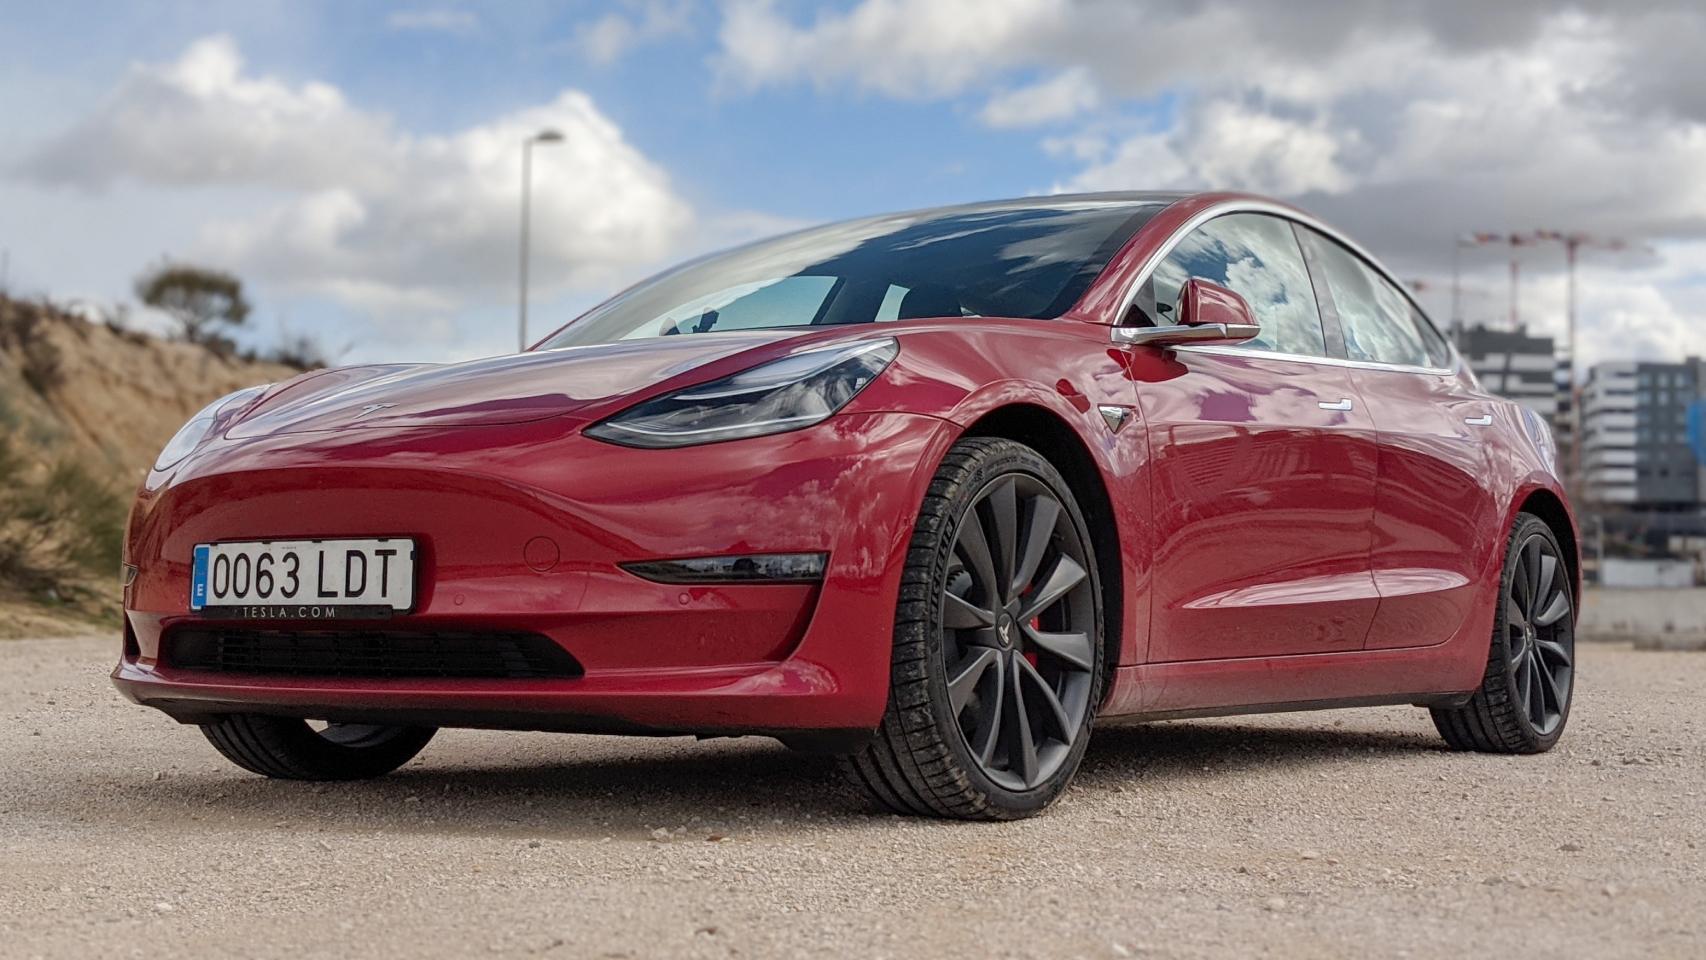 Los últimos modelos de Tesla, como el Model 3 lanzado en España, no se ven afectados